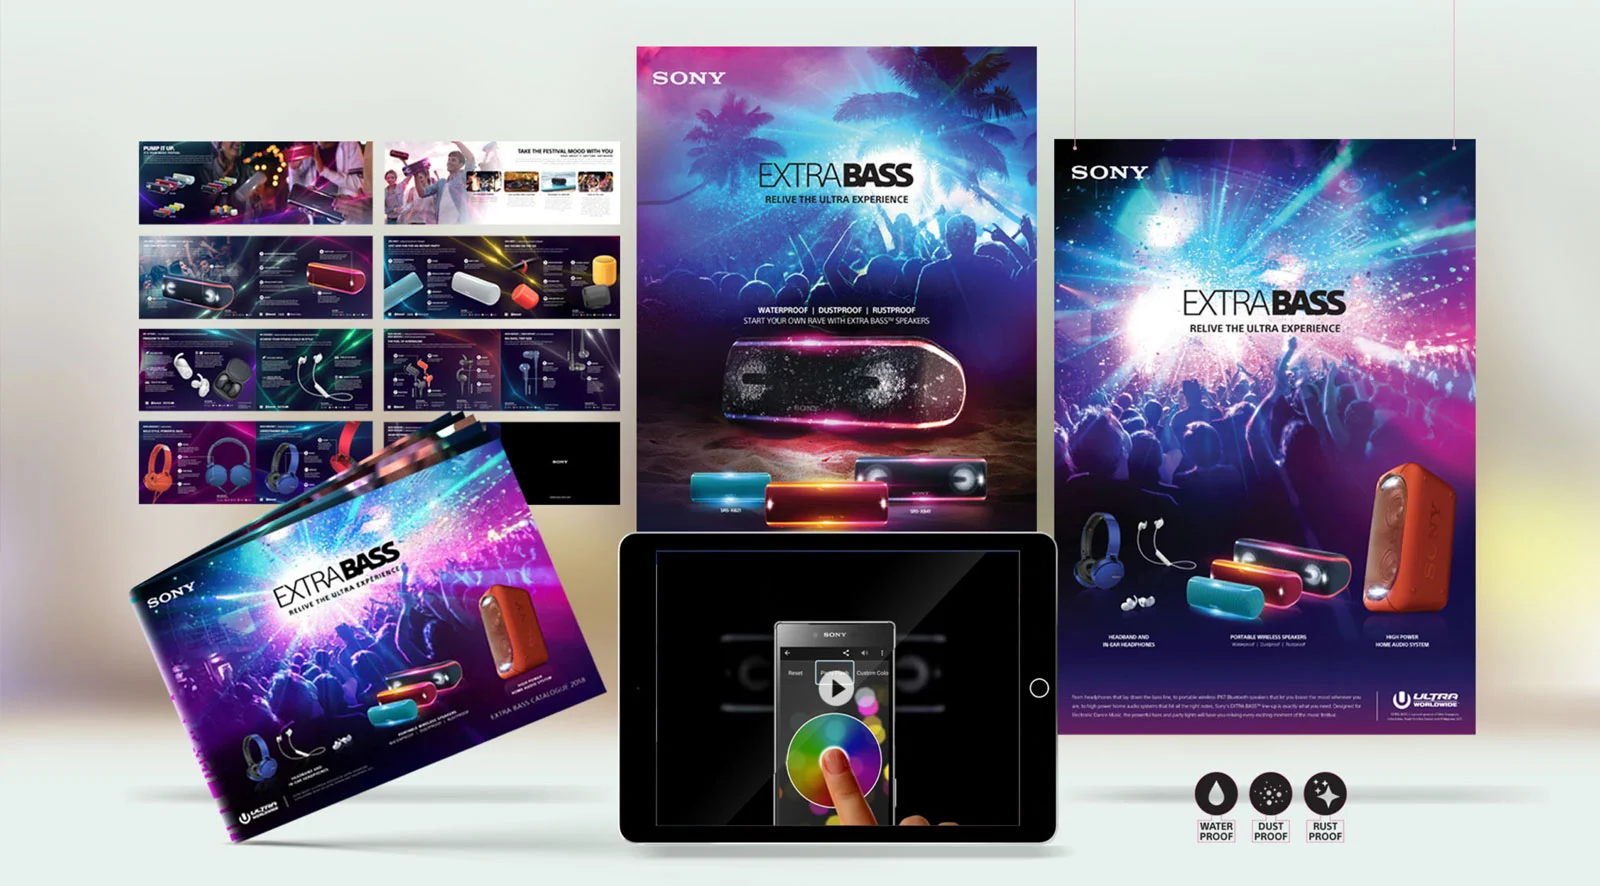 Sparkfury Portfolio - Sony Ultra Extra Bass campaign concept 2018